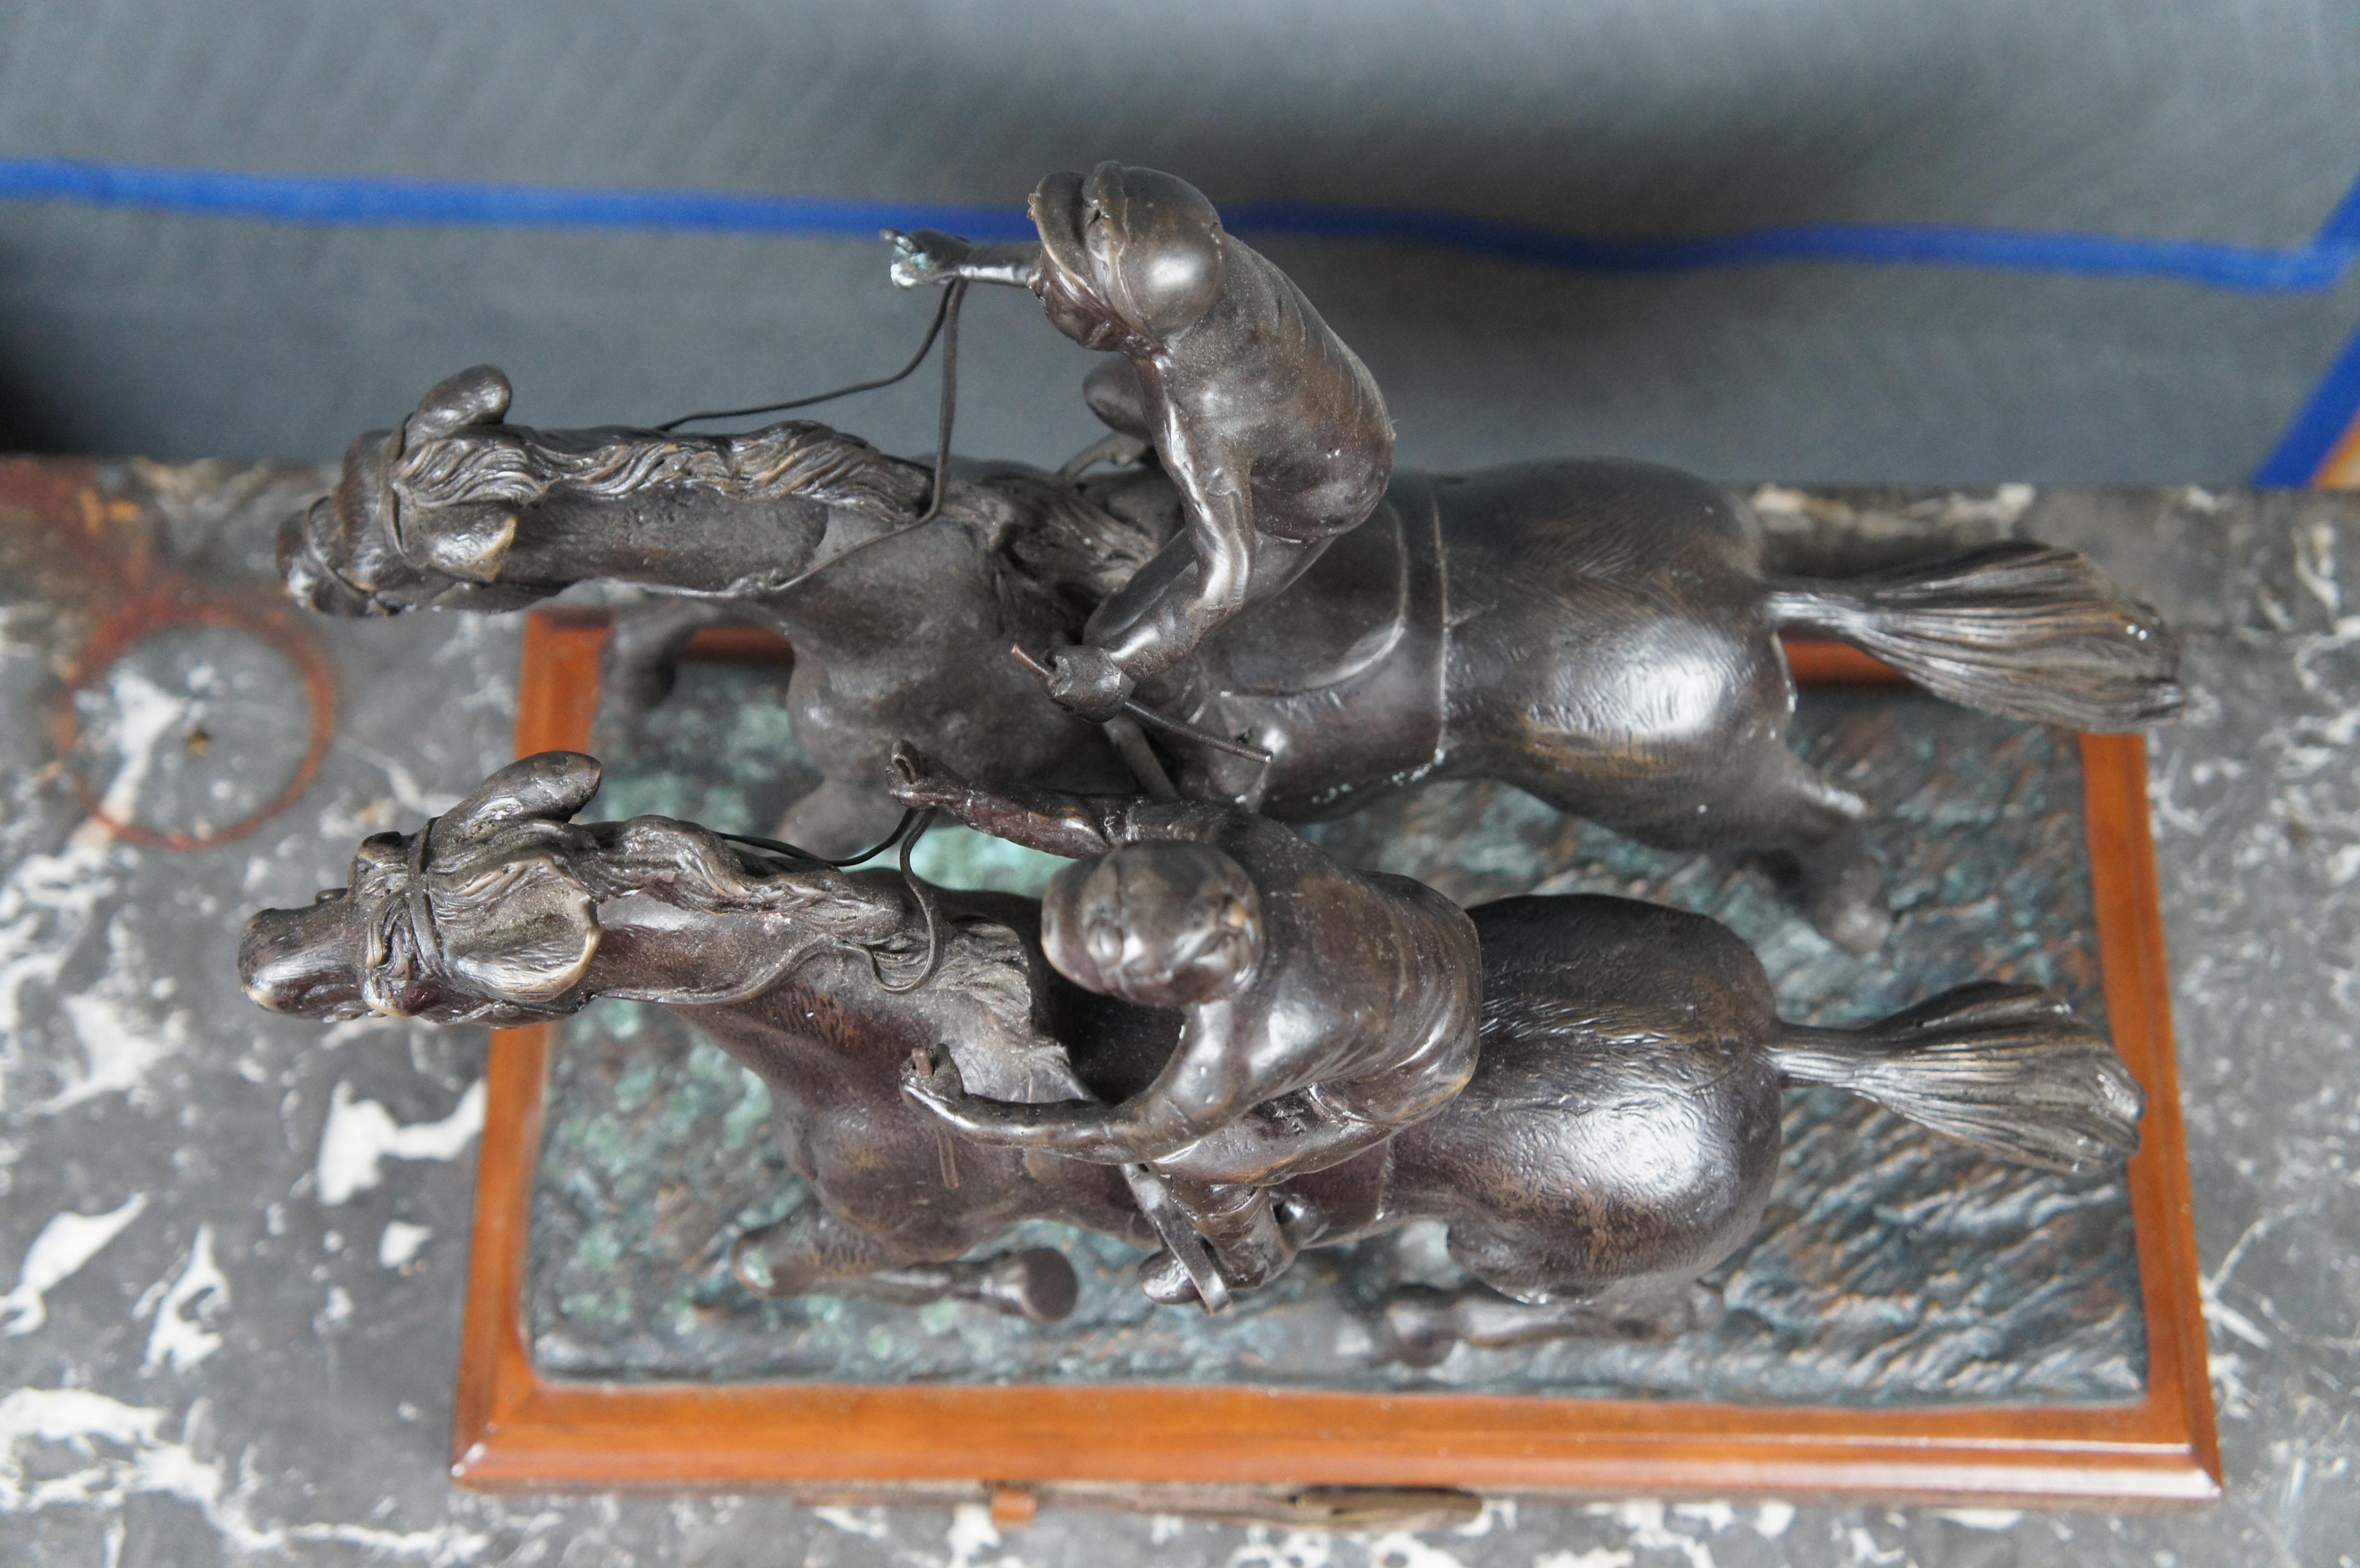 Maitland Smith Jockeys auf Pferd Bronze Reiterrennen-Statue 18